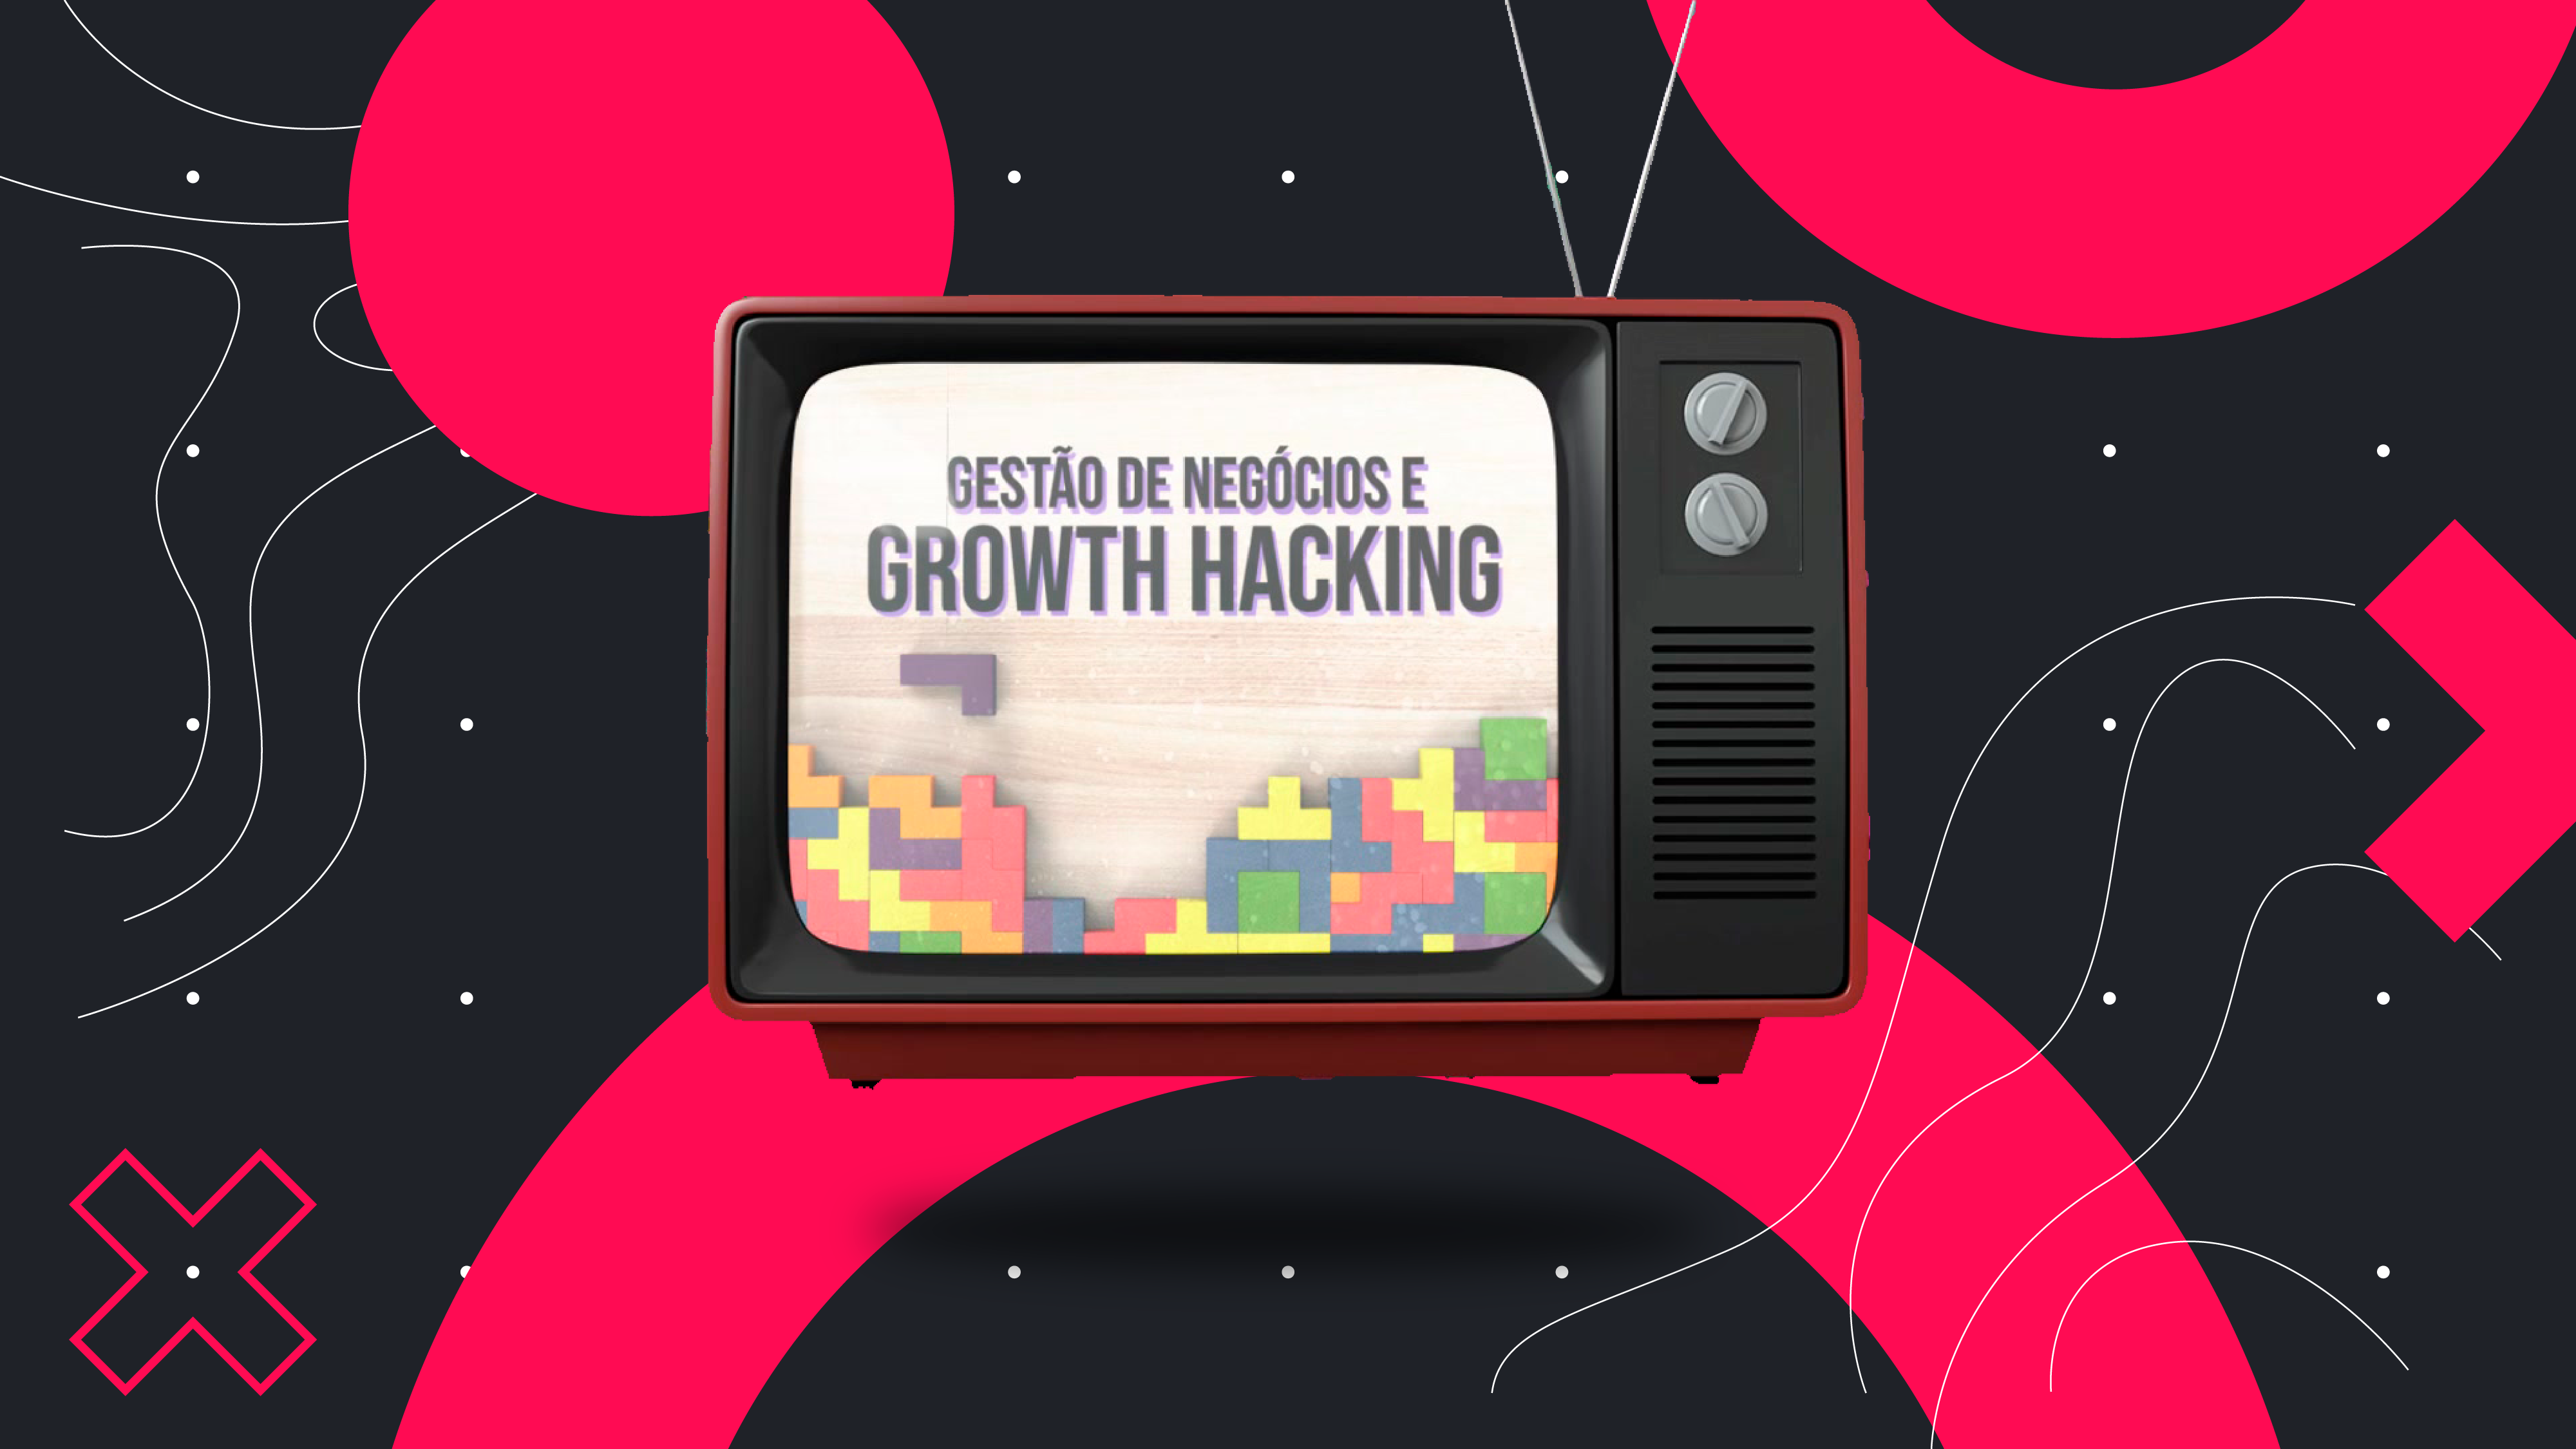 gestão de negócios e growth hacking